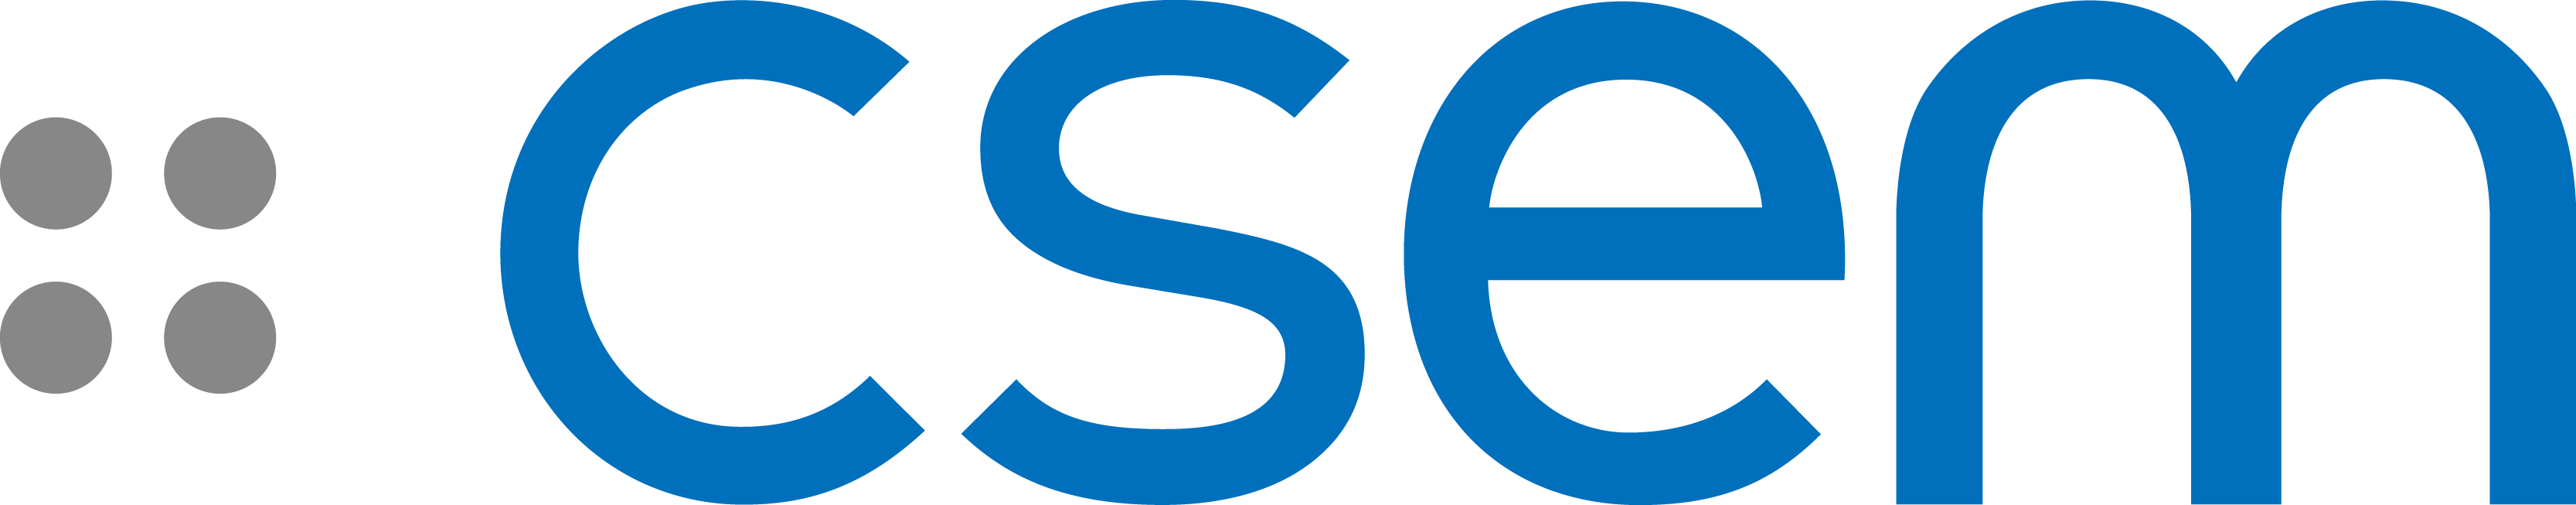 logo_csem_rgb-3333